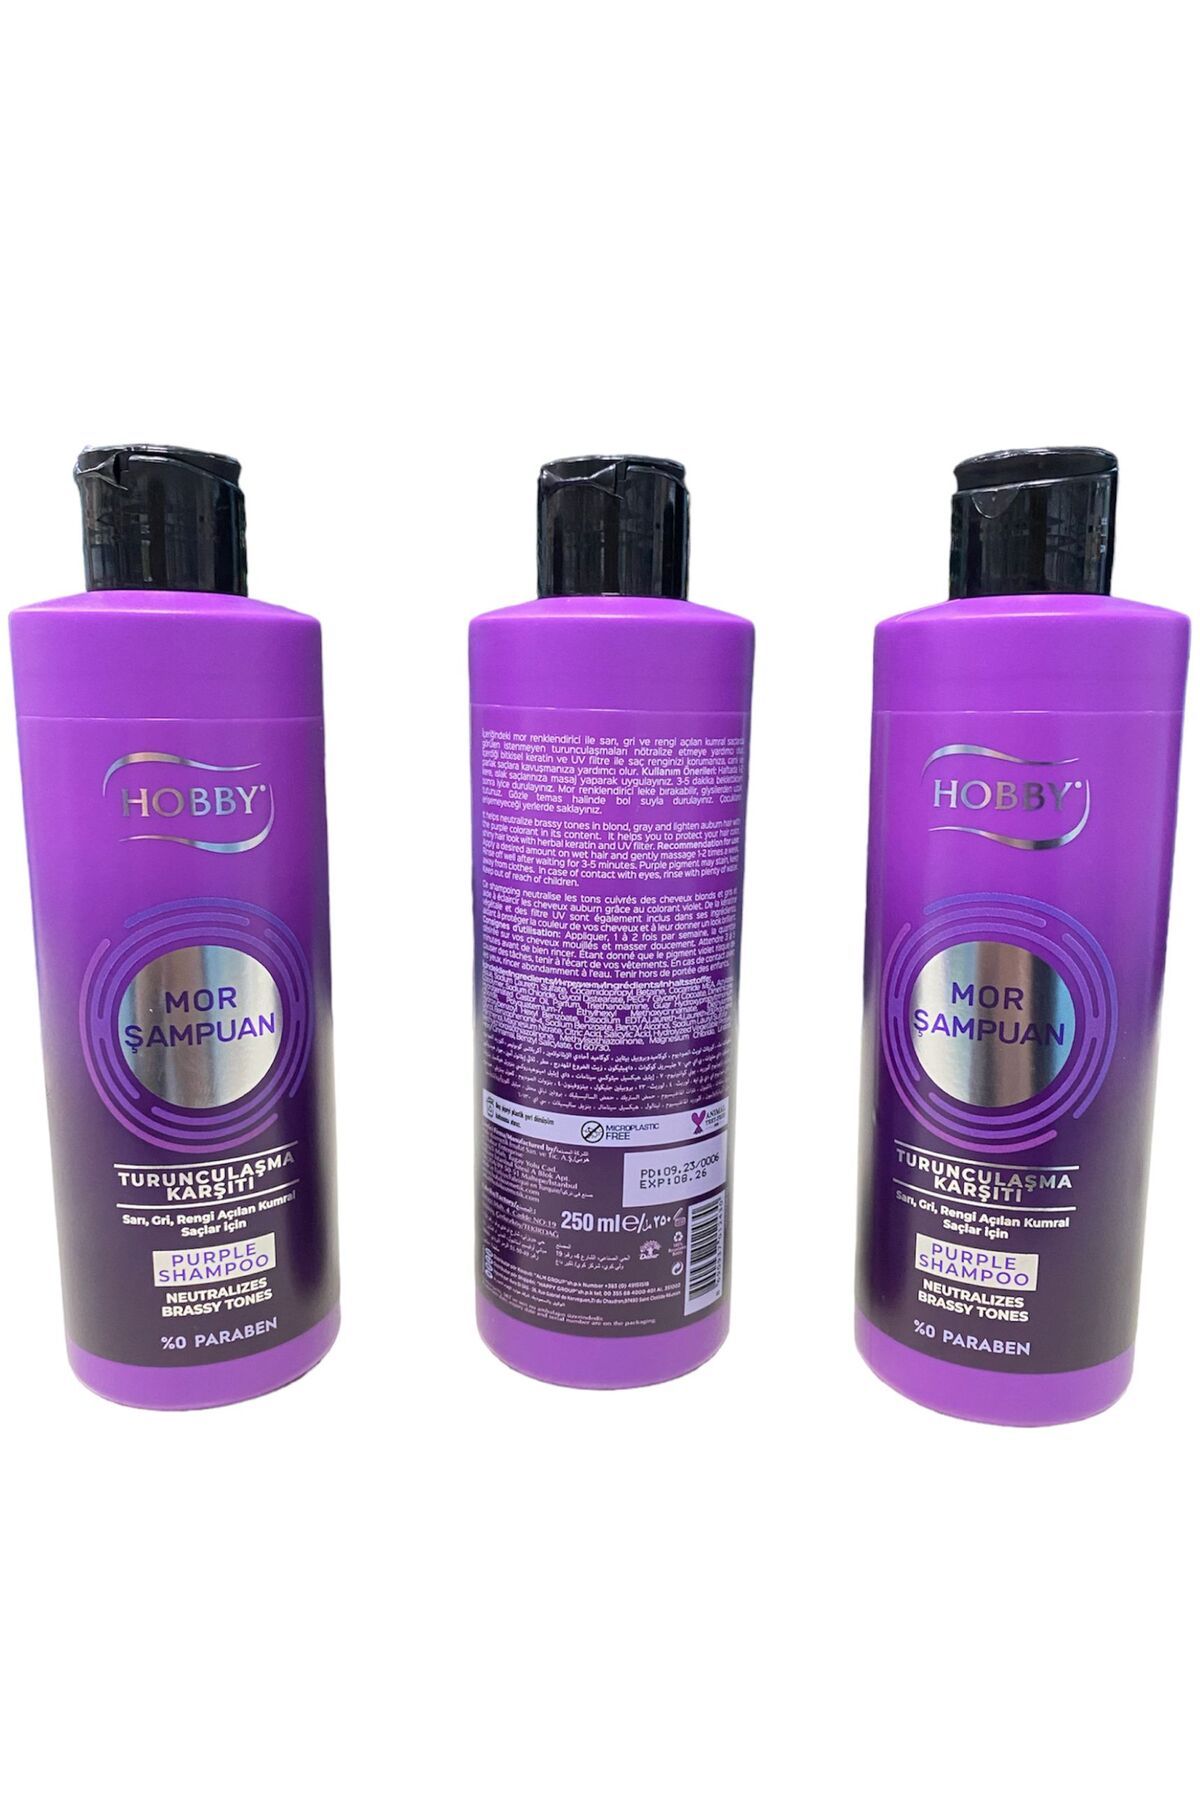 Hobby mor şampuan seti sette 3 adet ürün mevcuttur (3*250 ml : 750ml)